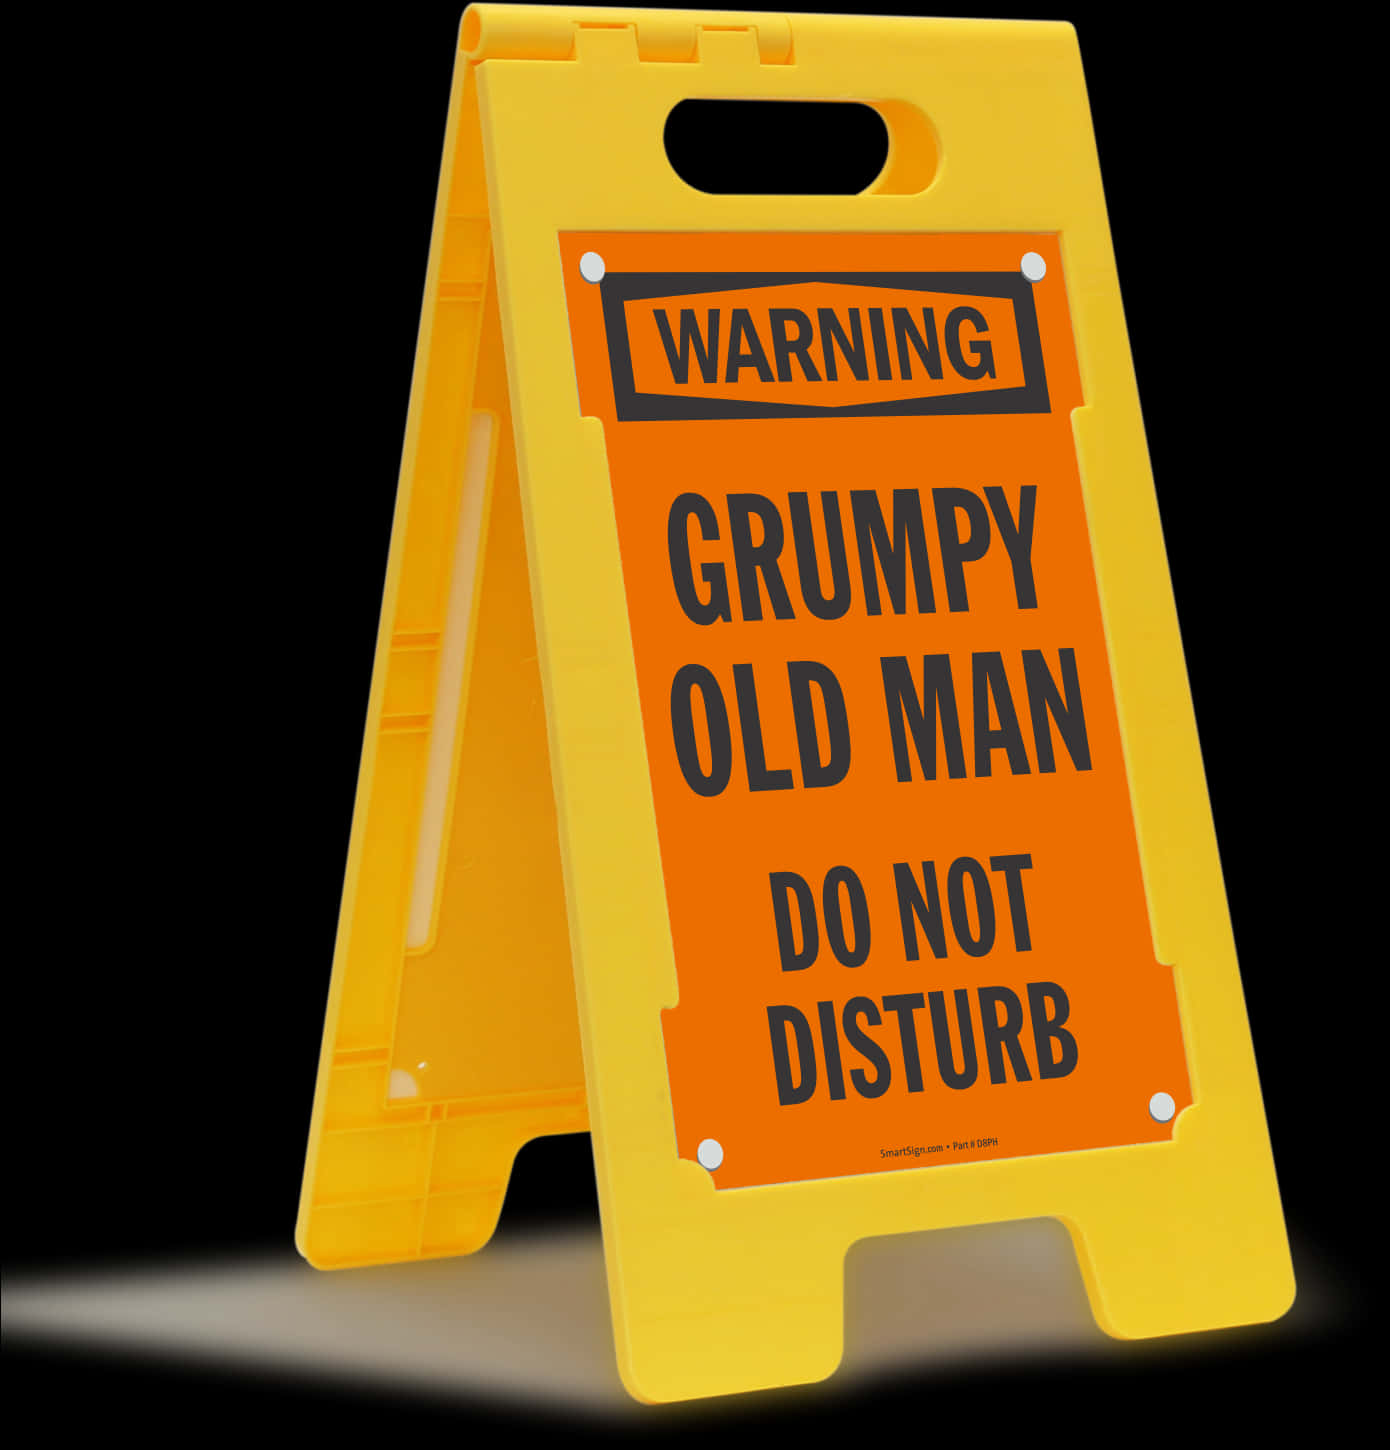 Grumpy Old Man Warning Sign PNG image